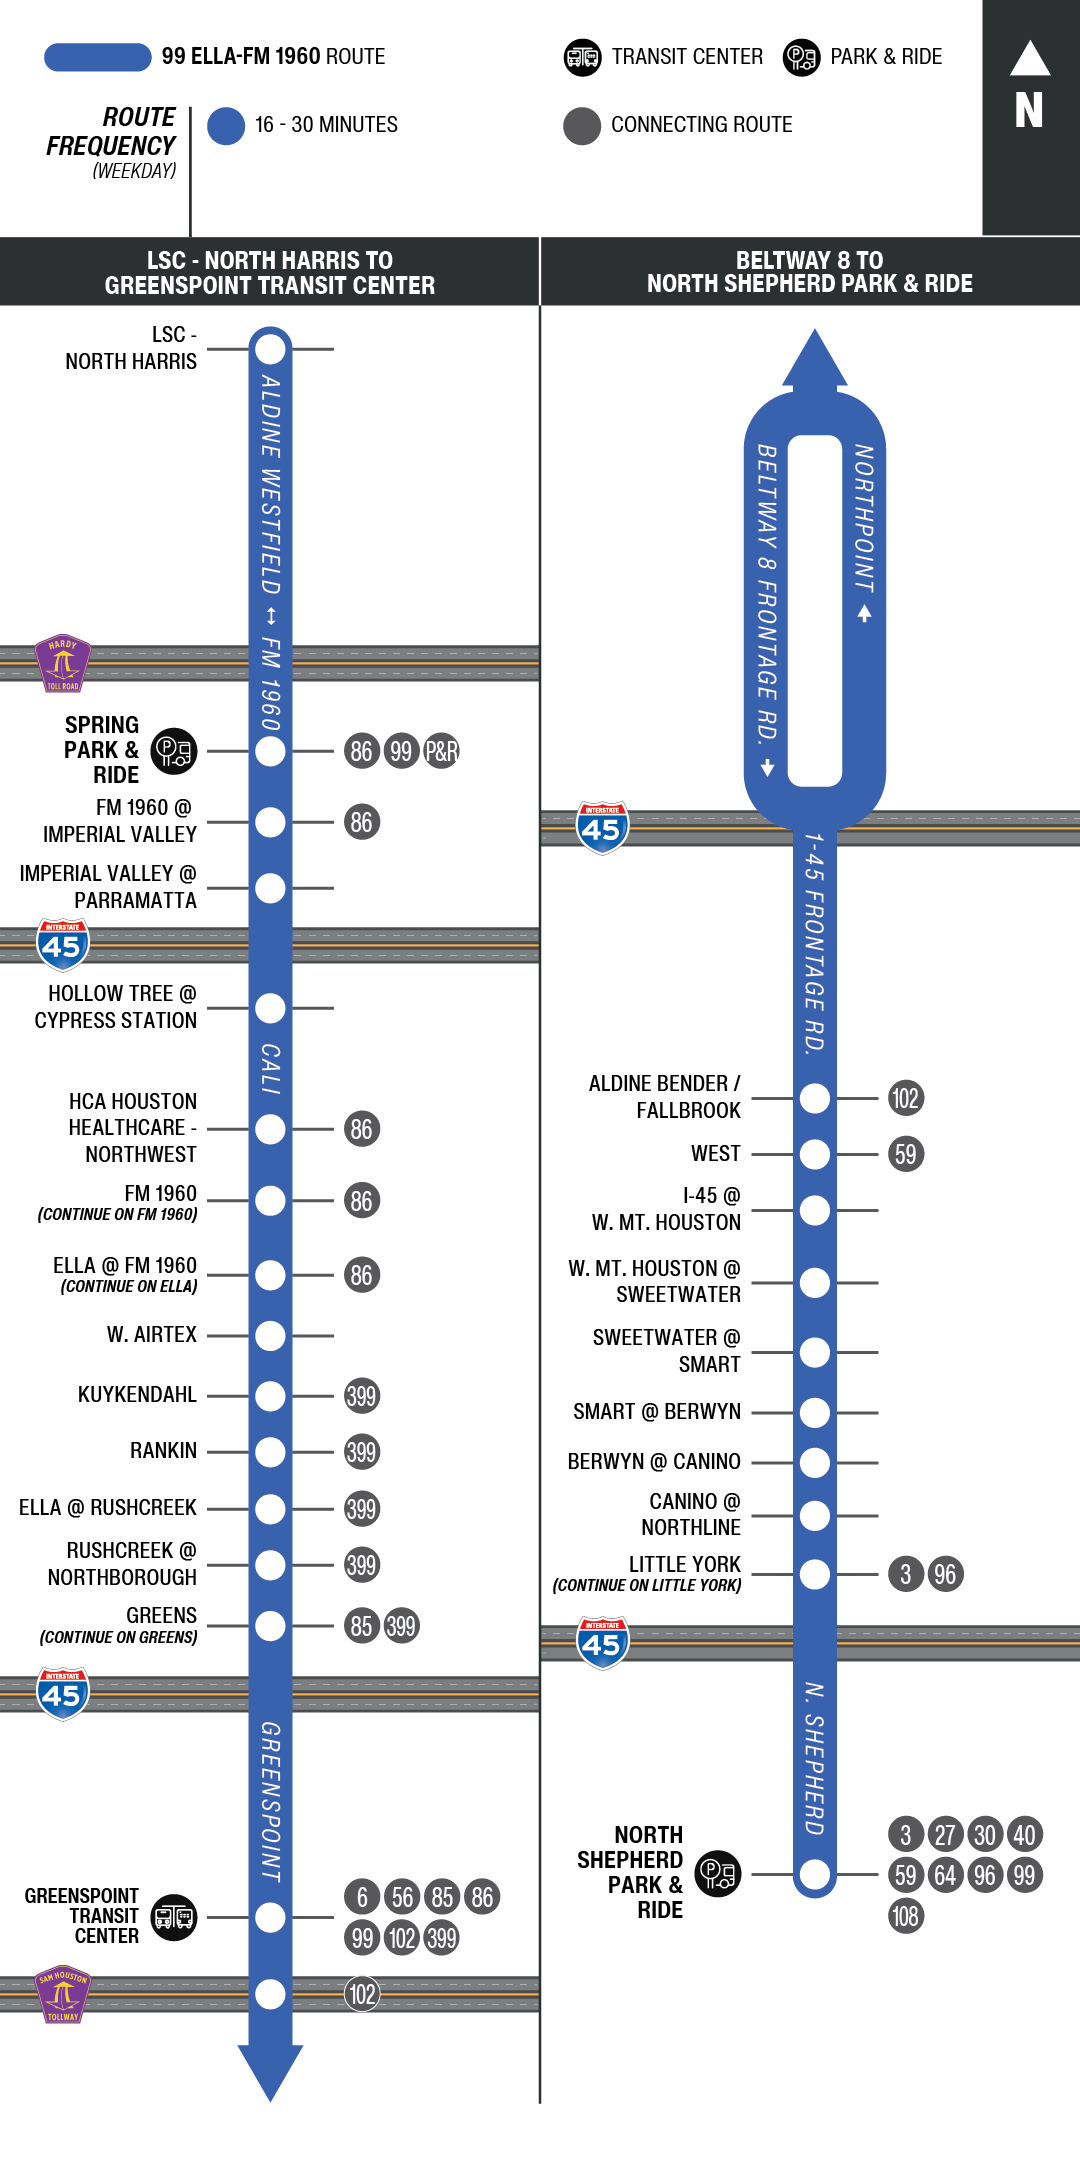 Route map for 99 Ella - FM 1960 bus